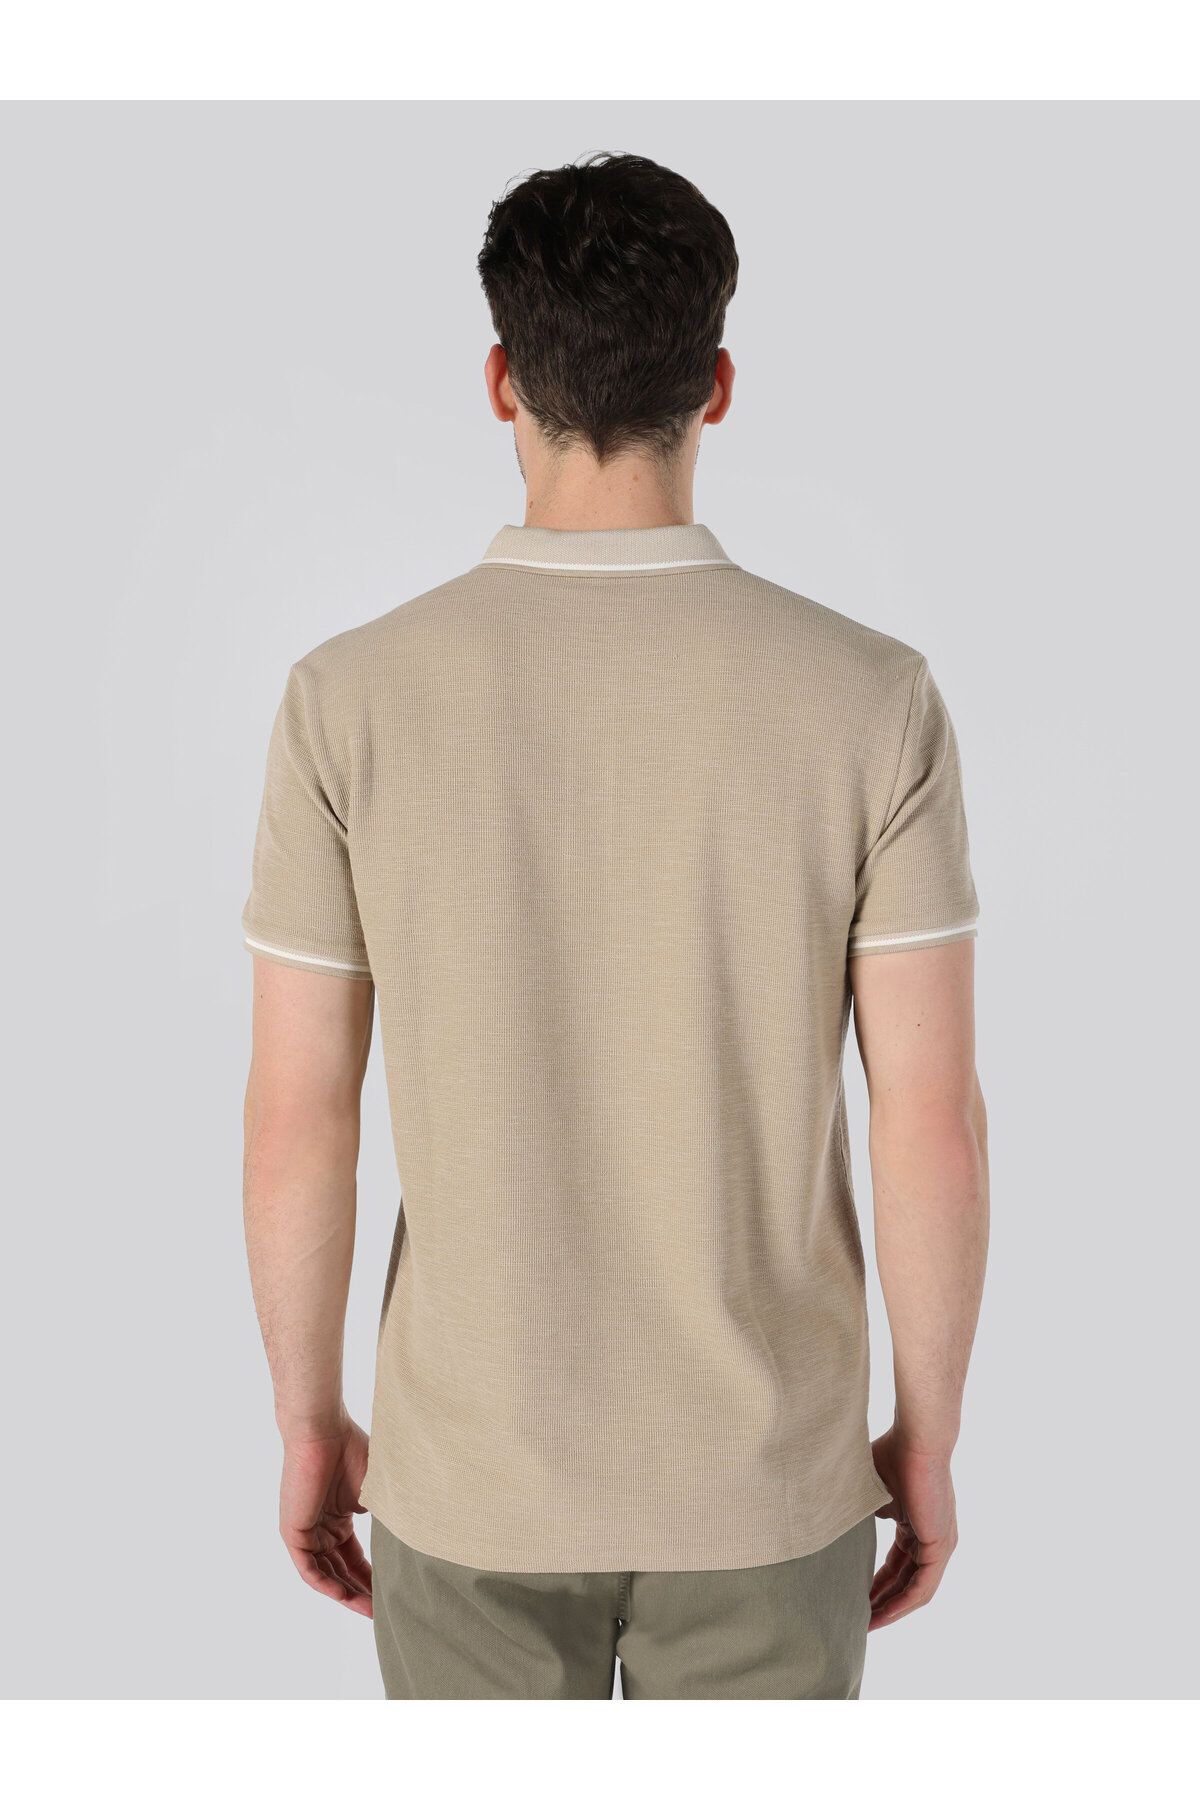 Colin’s تی شرت آستین کوتاه یقه چوگان مردانه بژ با تناسب معمولی